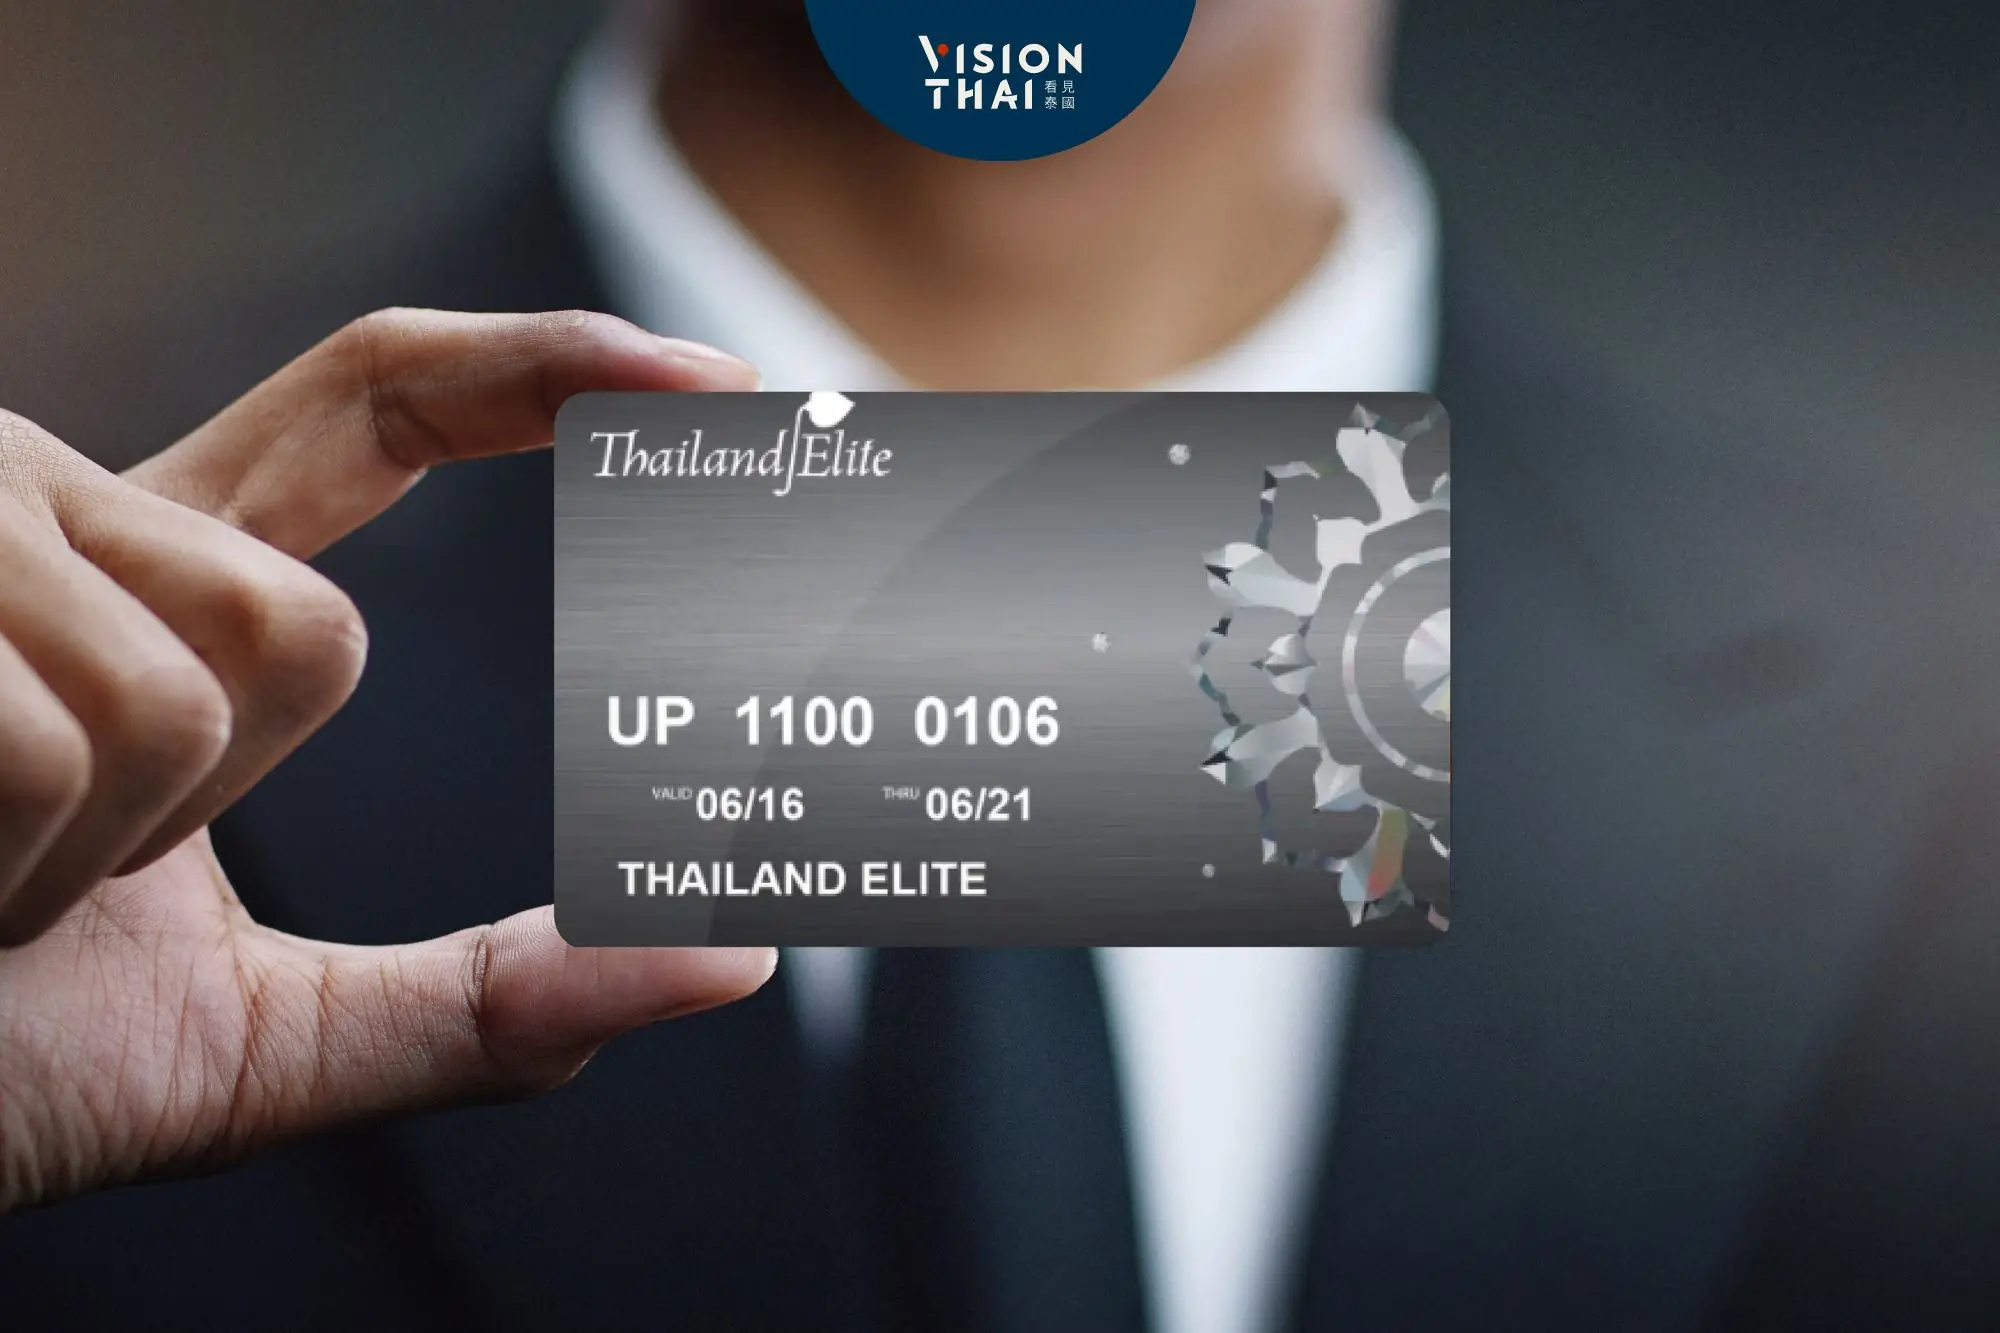 泰國精英卡將漲價50%！入門卡90萬、頂級卡500萬泰銖採邀請制（圖片來源：看見泰國 Vision Thai）